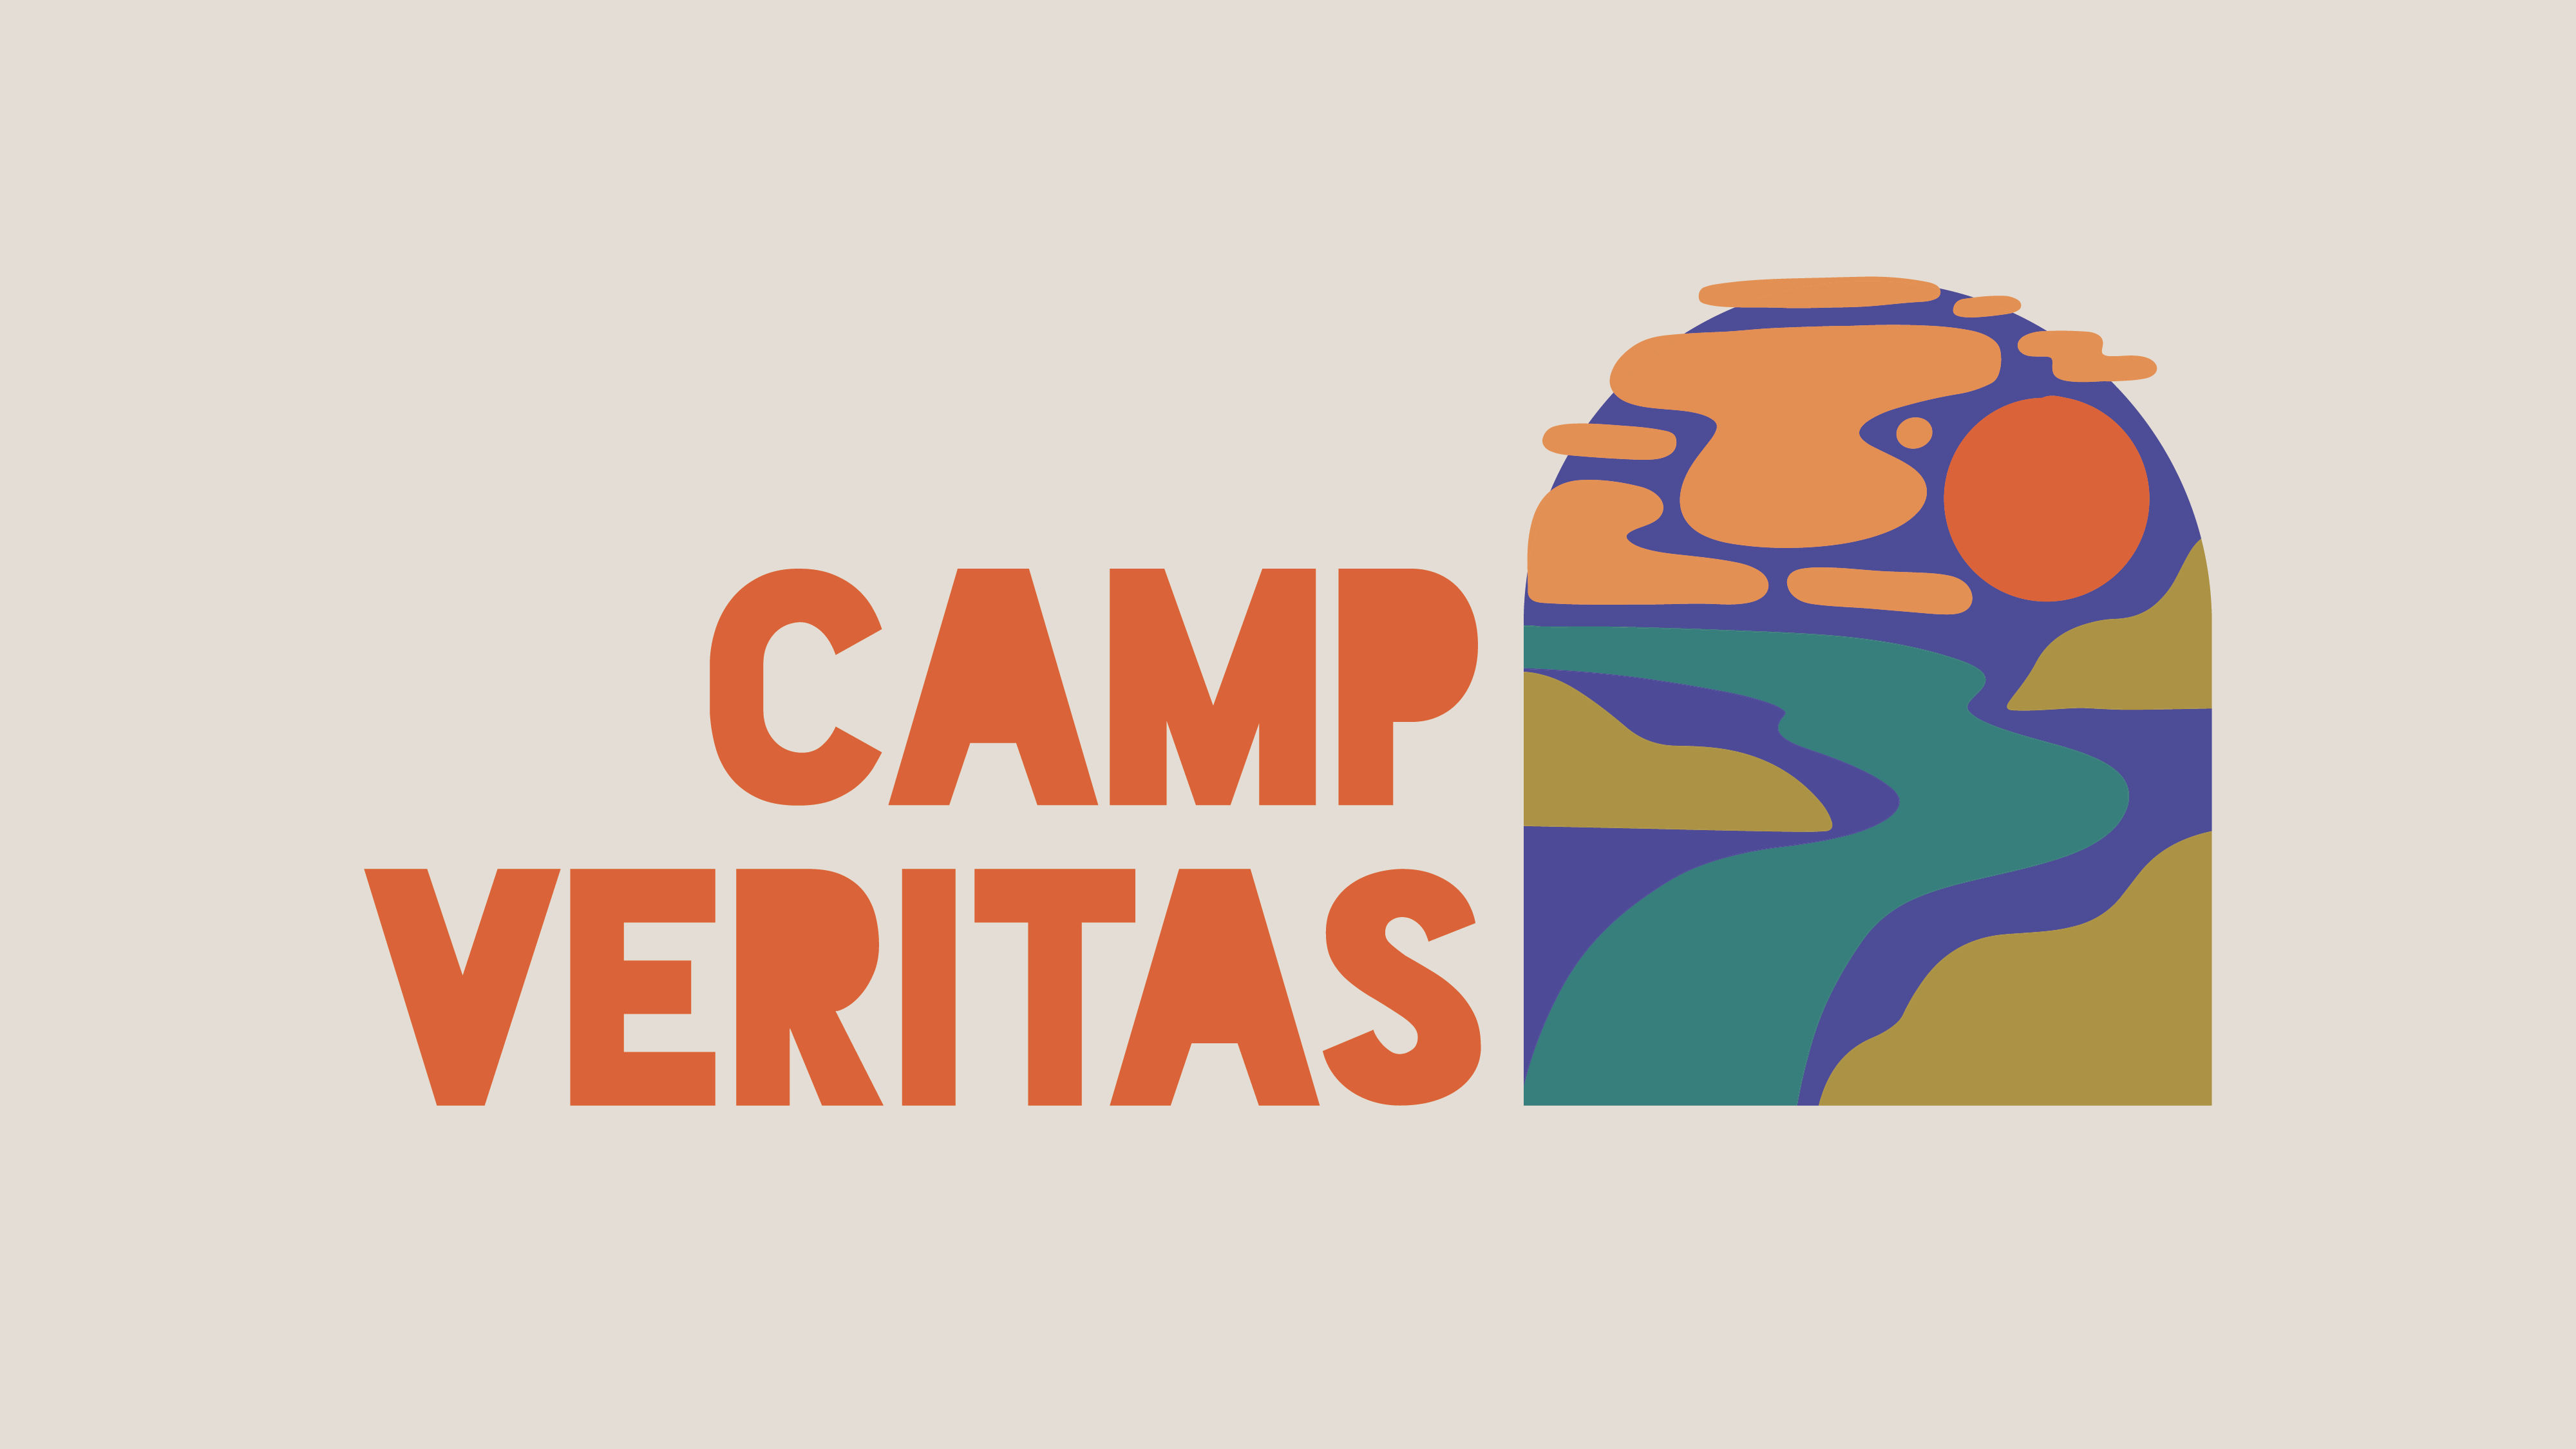 Camp Veritas